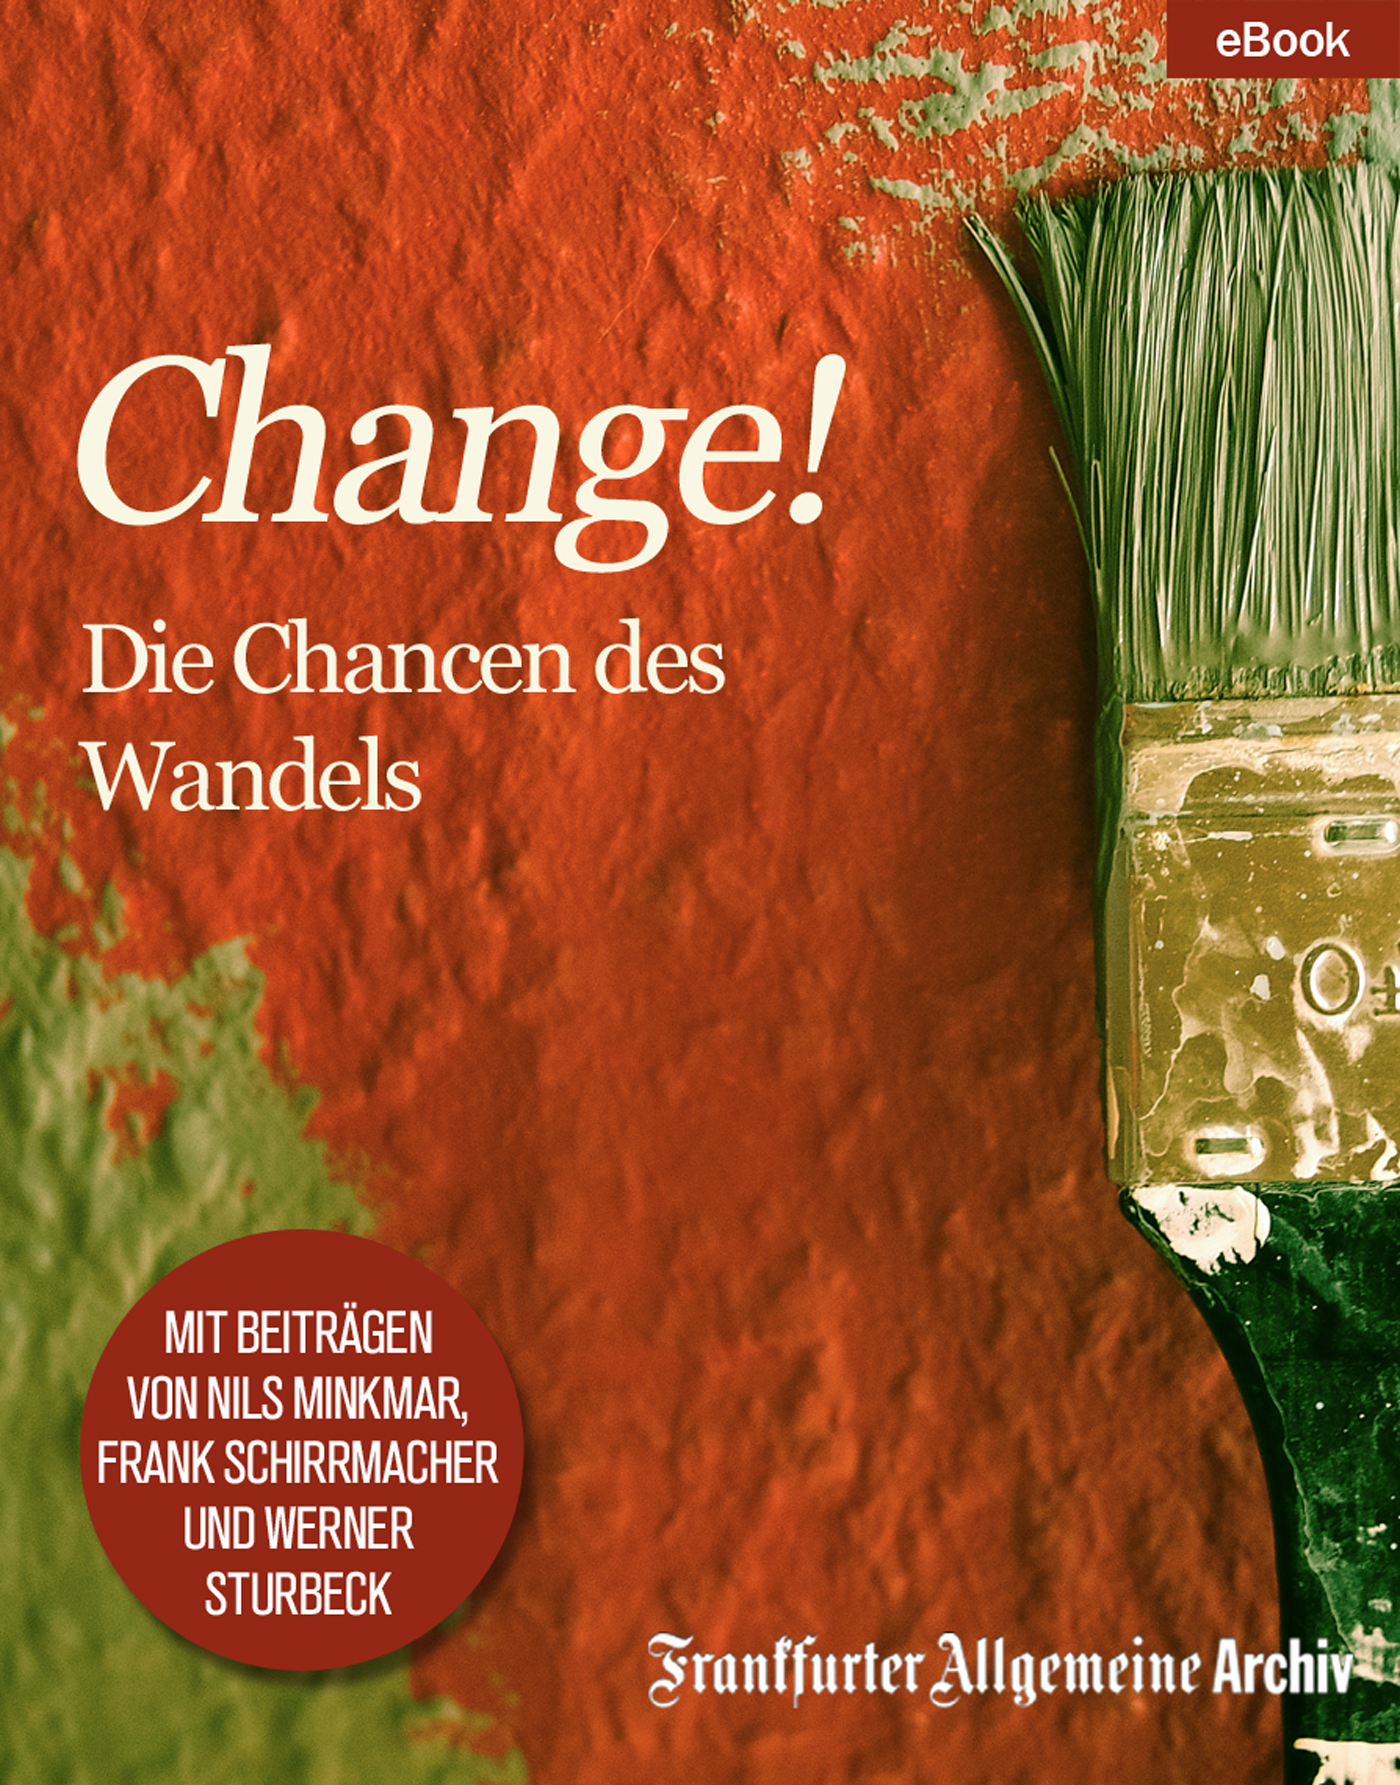 Frankfurter Allgemeine Archiv "Change!"